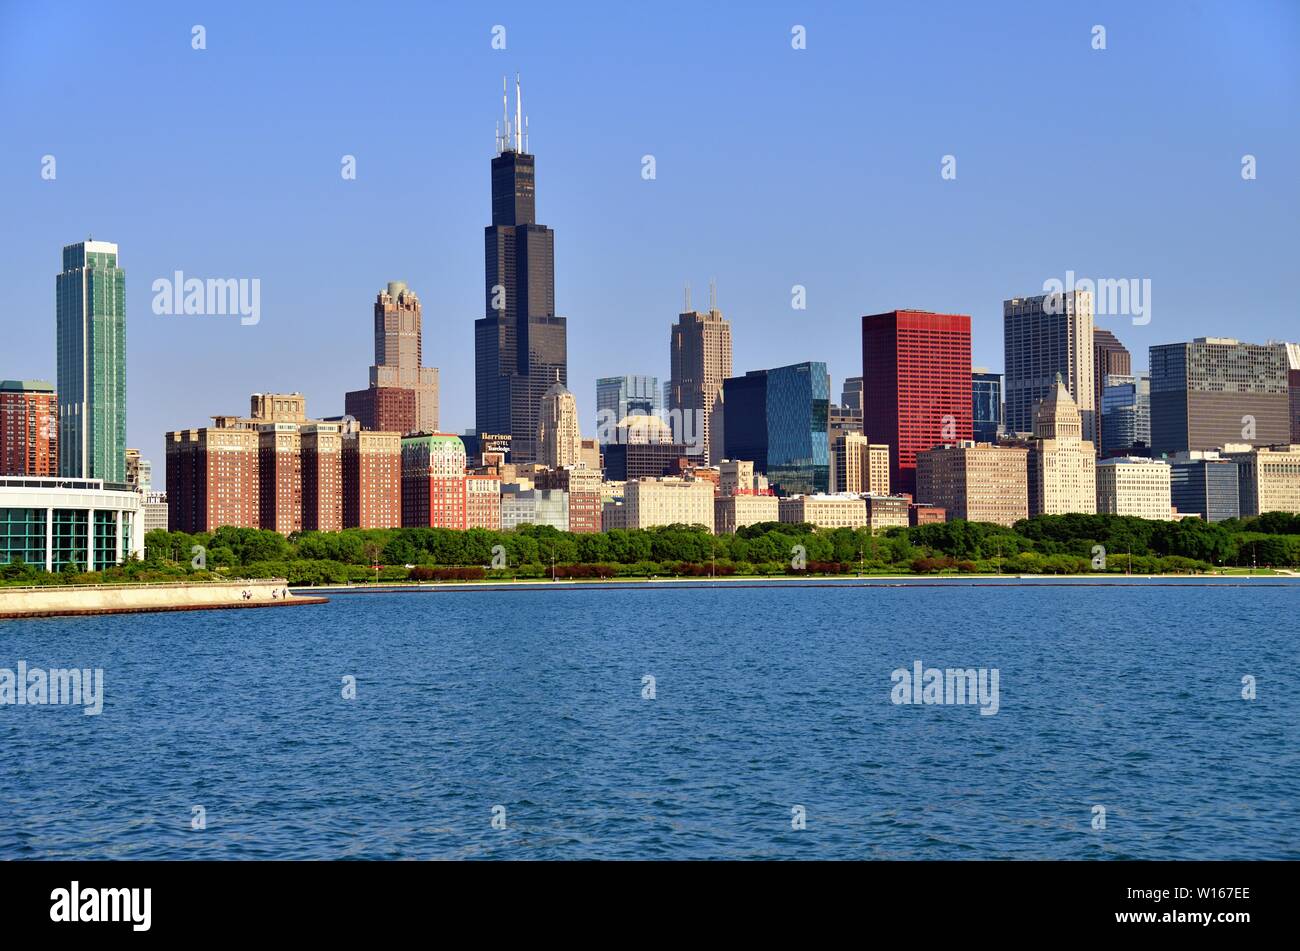 Chicago, Illinois, Stati Uniti d'America. Una porzione dello skyline della città dominata dal sud del Loop Willis Tower (formerly Sears Tower). Foto Stock